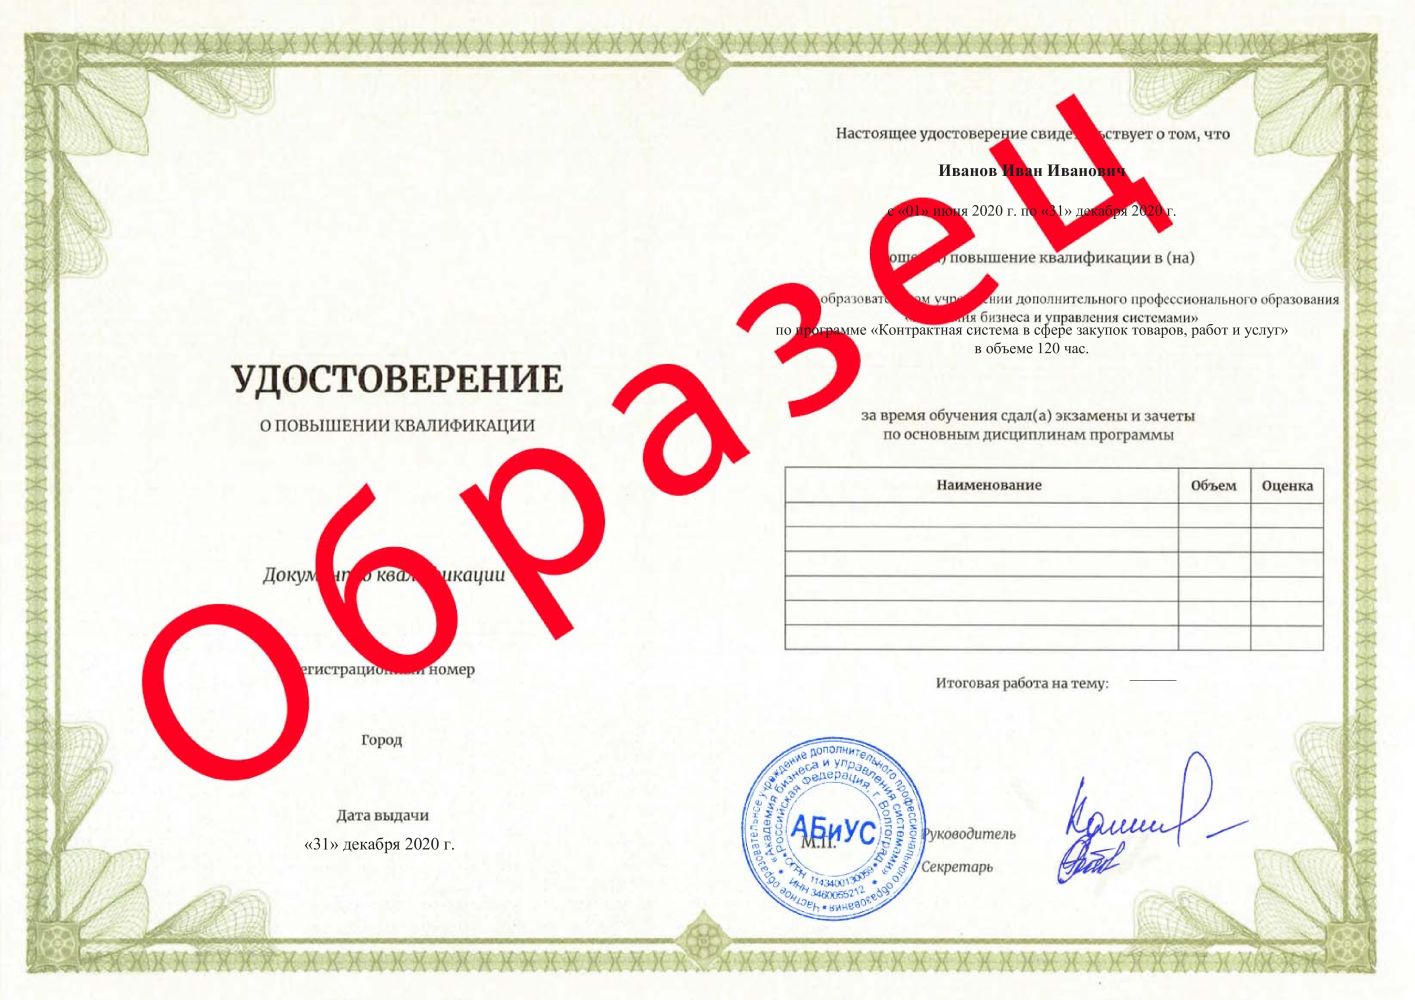 Удостоверение Контрактная система в сфере закупок товаров, работ и услуг 120 часов 8250 руб.